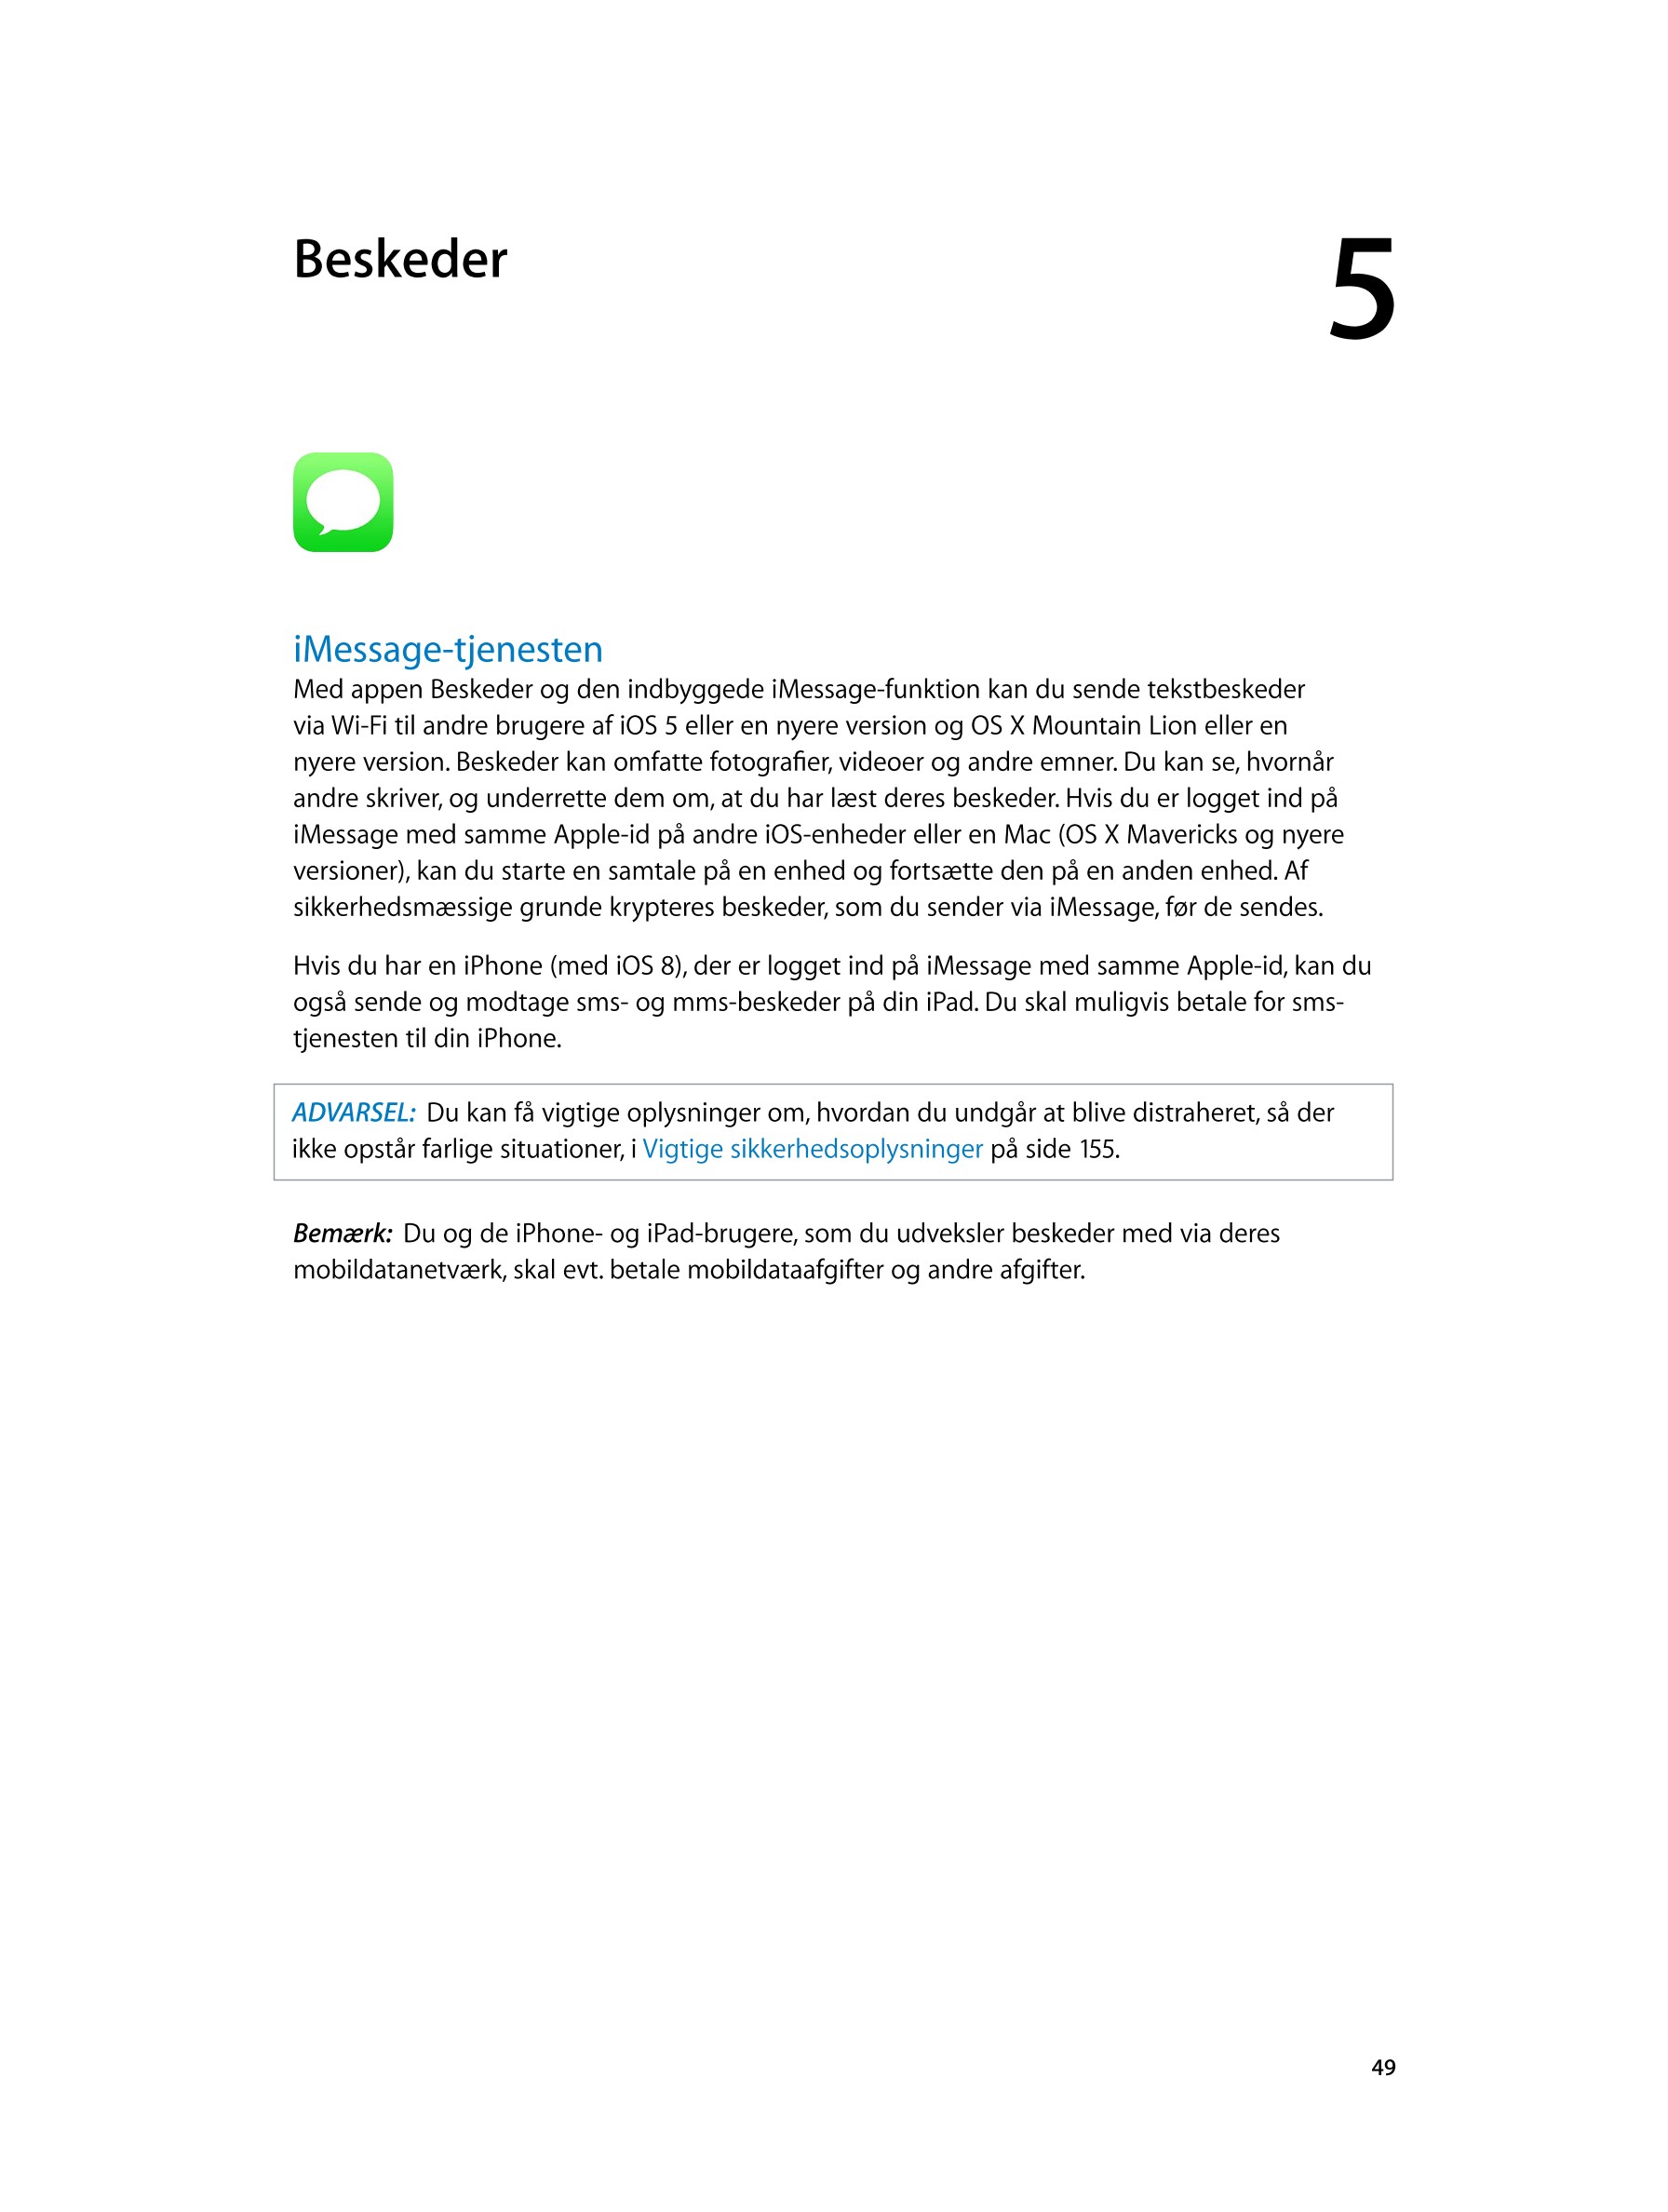   Beskeder 5         
iMessage-tjenesten
Med appen Beskeder og den indbyggede iMessage-funktion kan du sende tekstbeskeder 
via 